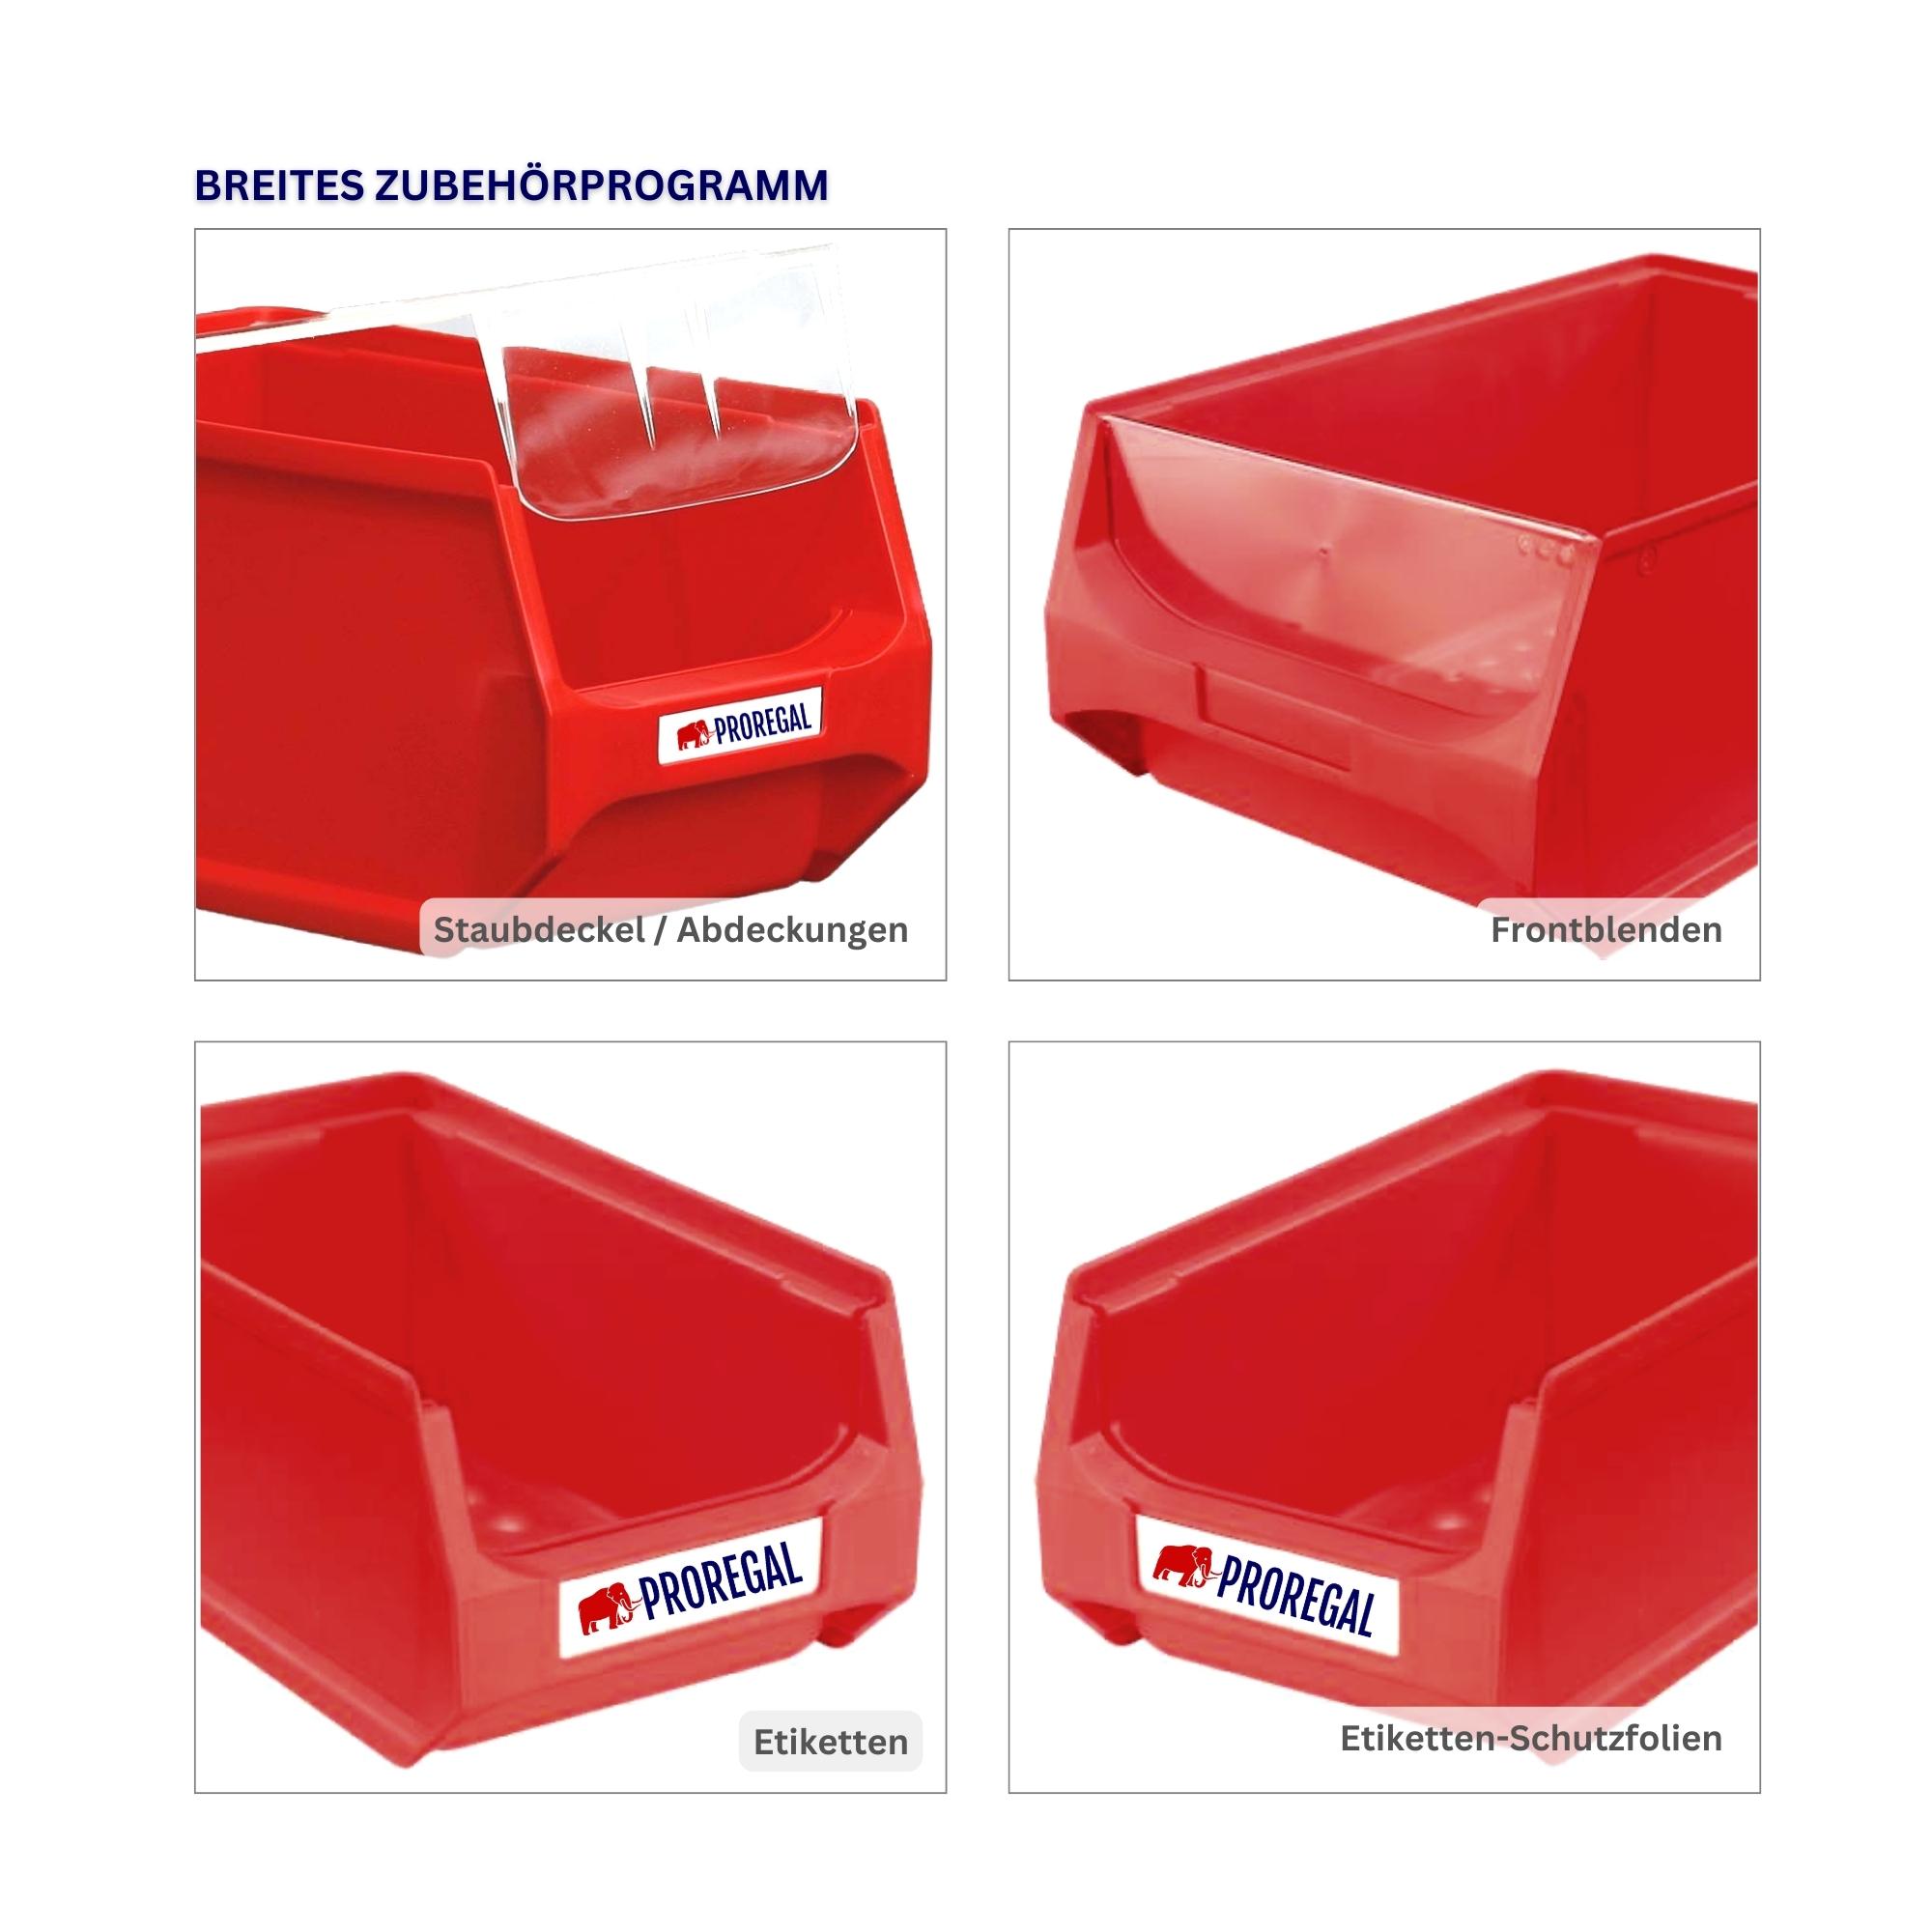 Trägersystem Rote Systemplatte mit 45x roten Sichtlagerboxen 1.0 | Maße HxB 50x100cm | Sichtlagerbox, Sichtlagerbehälter, Sichtlagerkasten